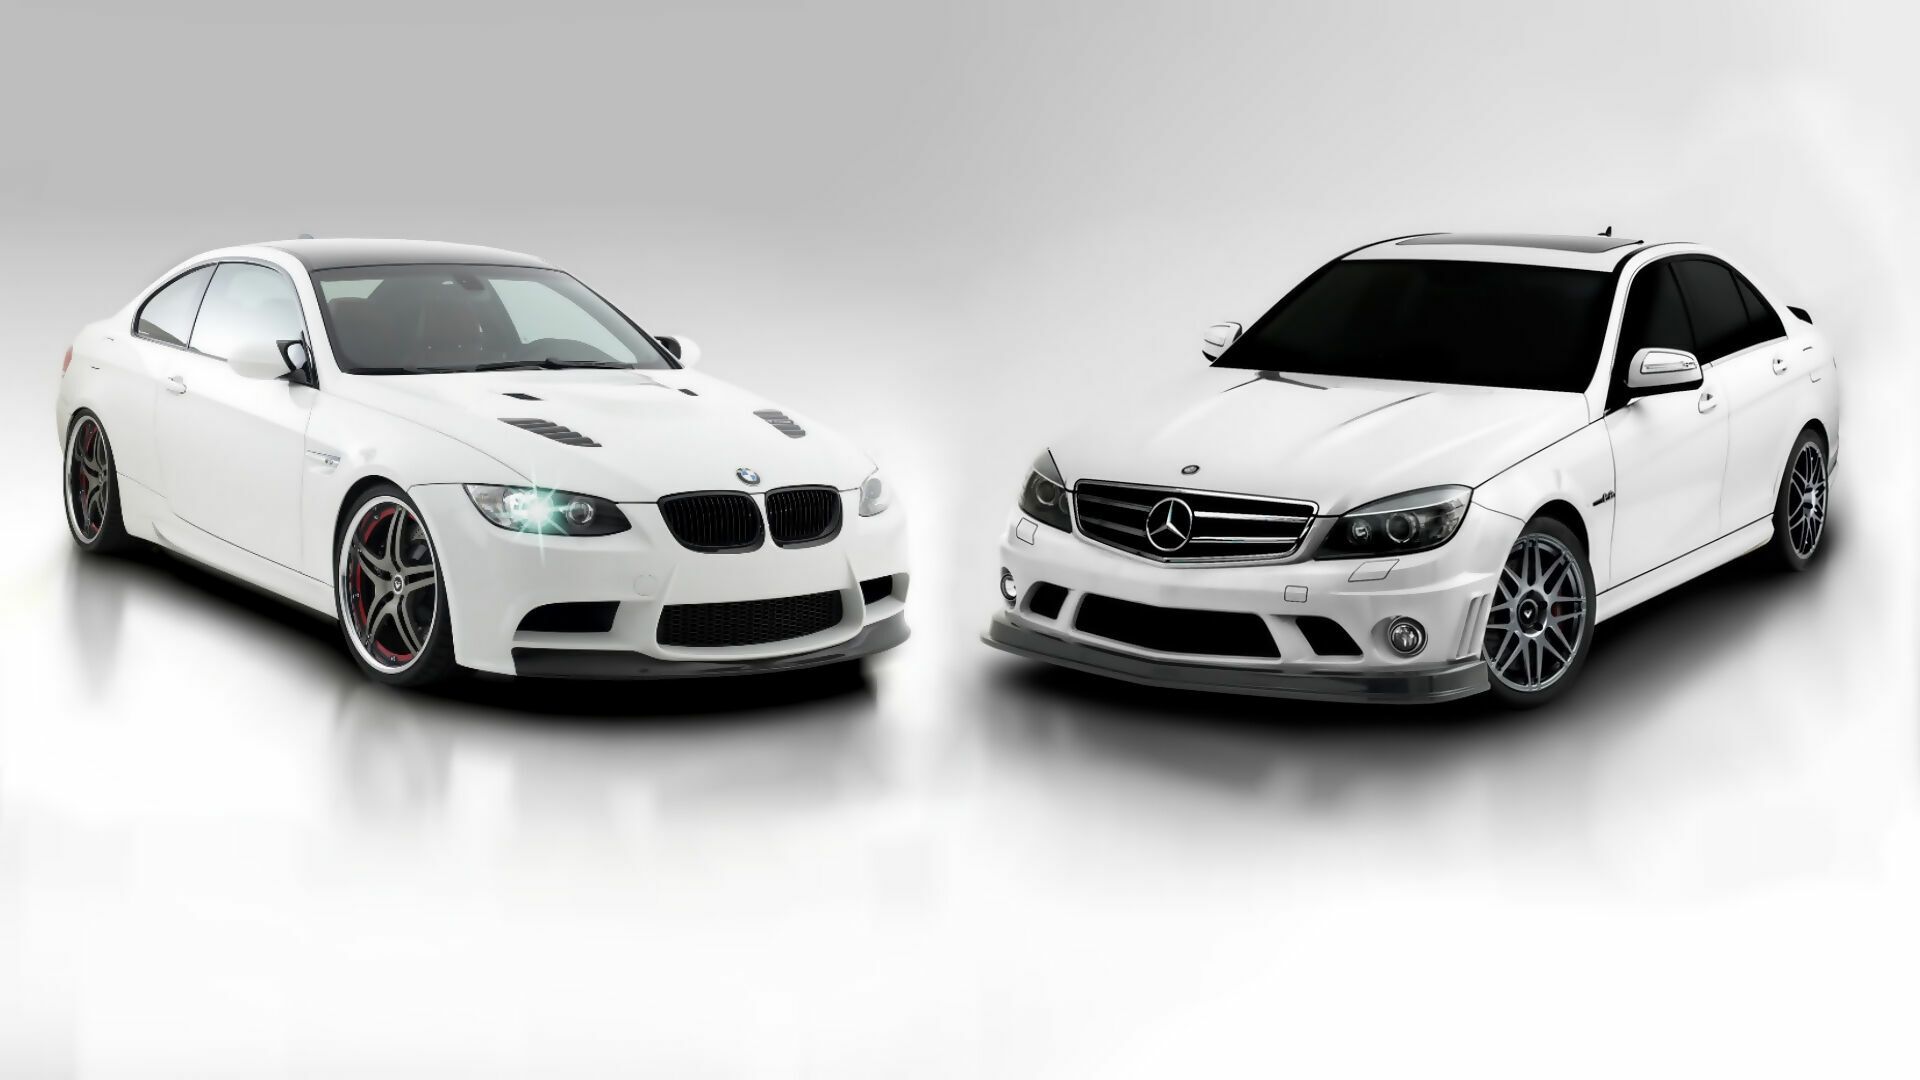 Эксперты поставили точку в споре, какие авто лучше - Mercedes или BMW